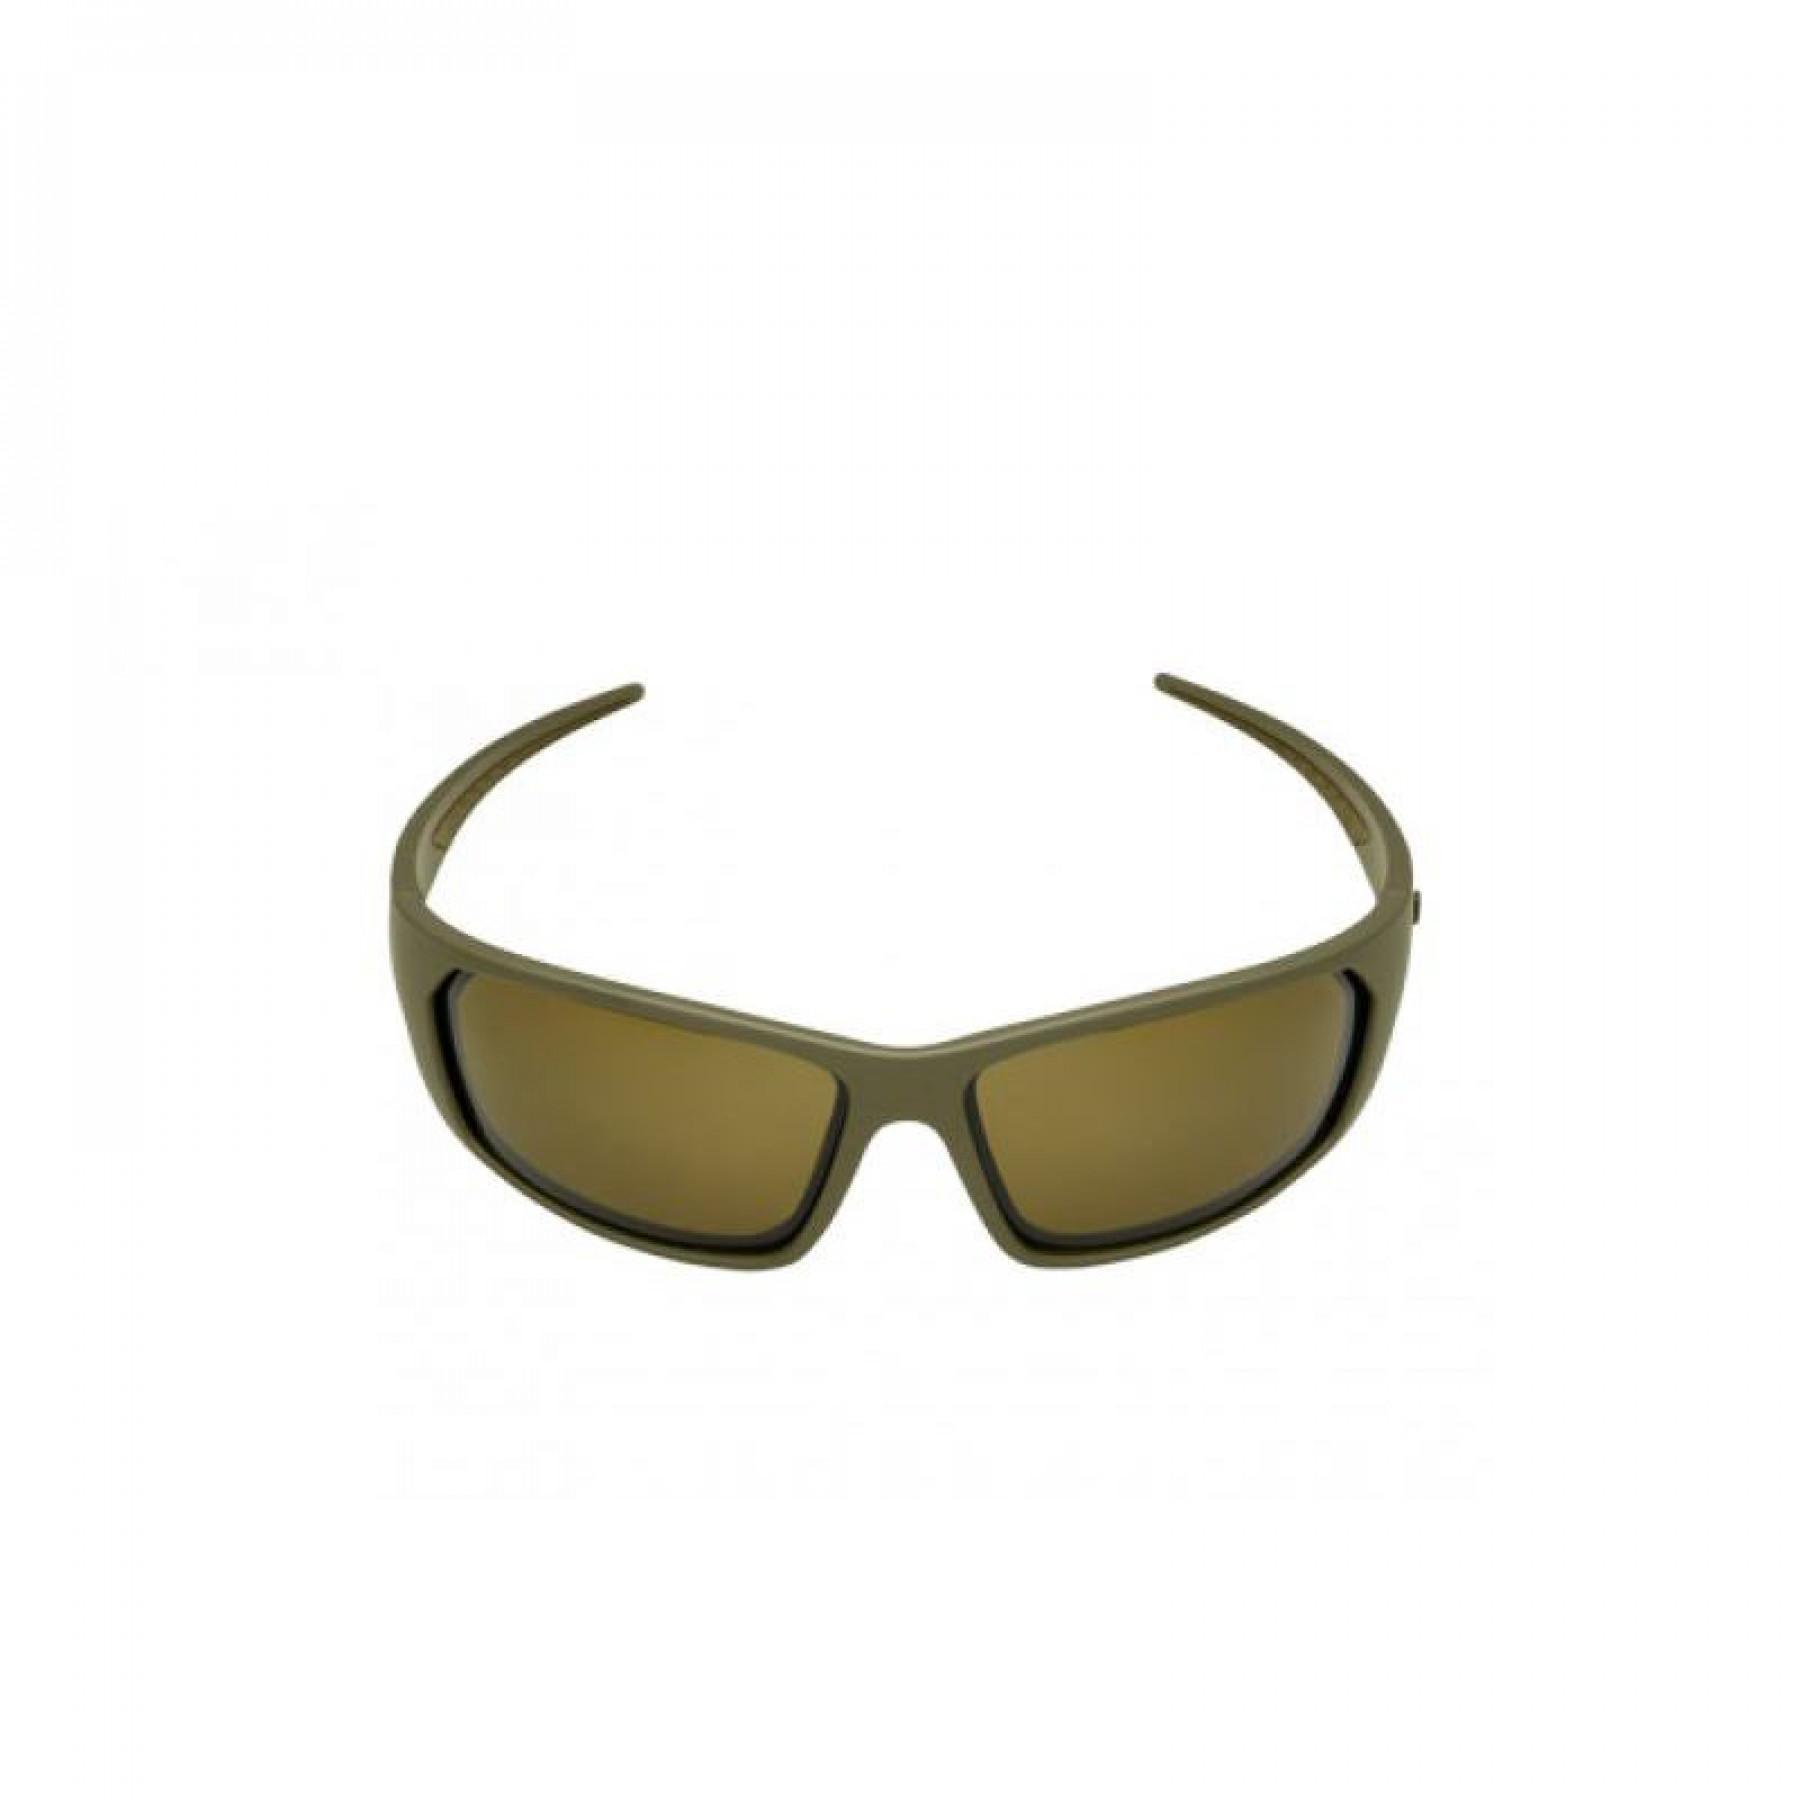 Okulary przeciwsłoneczne typu WraparoundTrakker